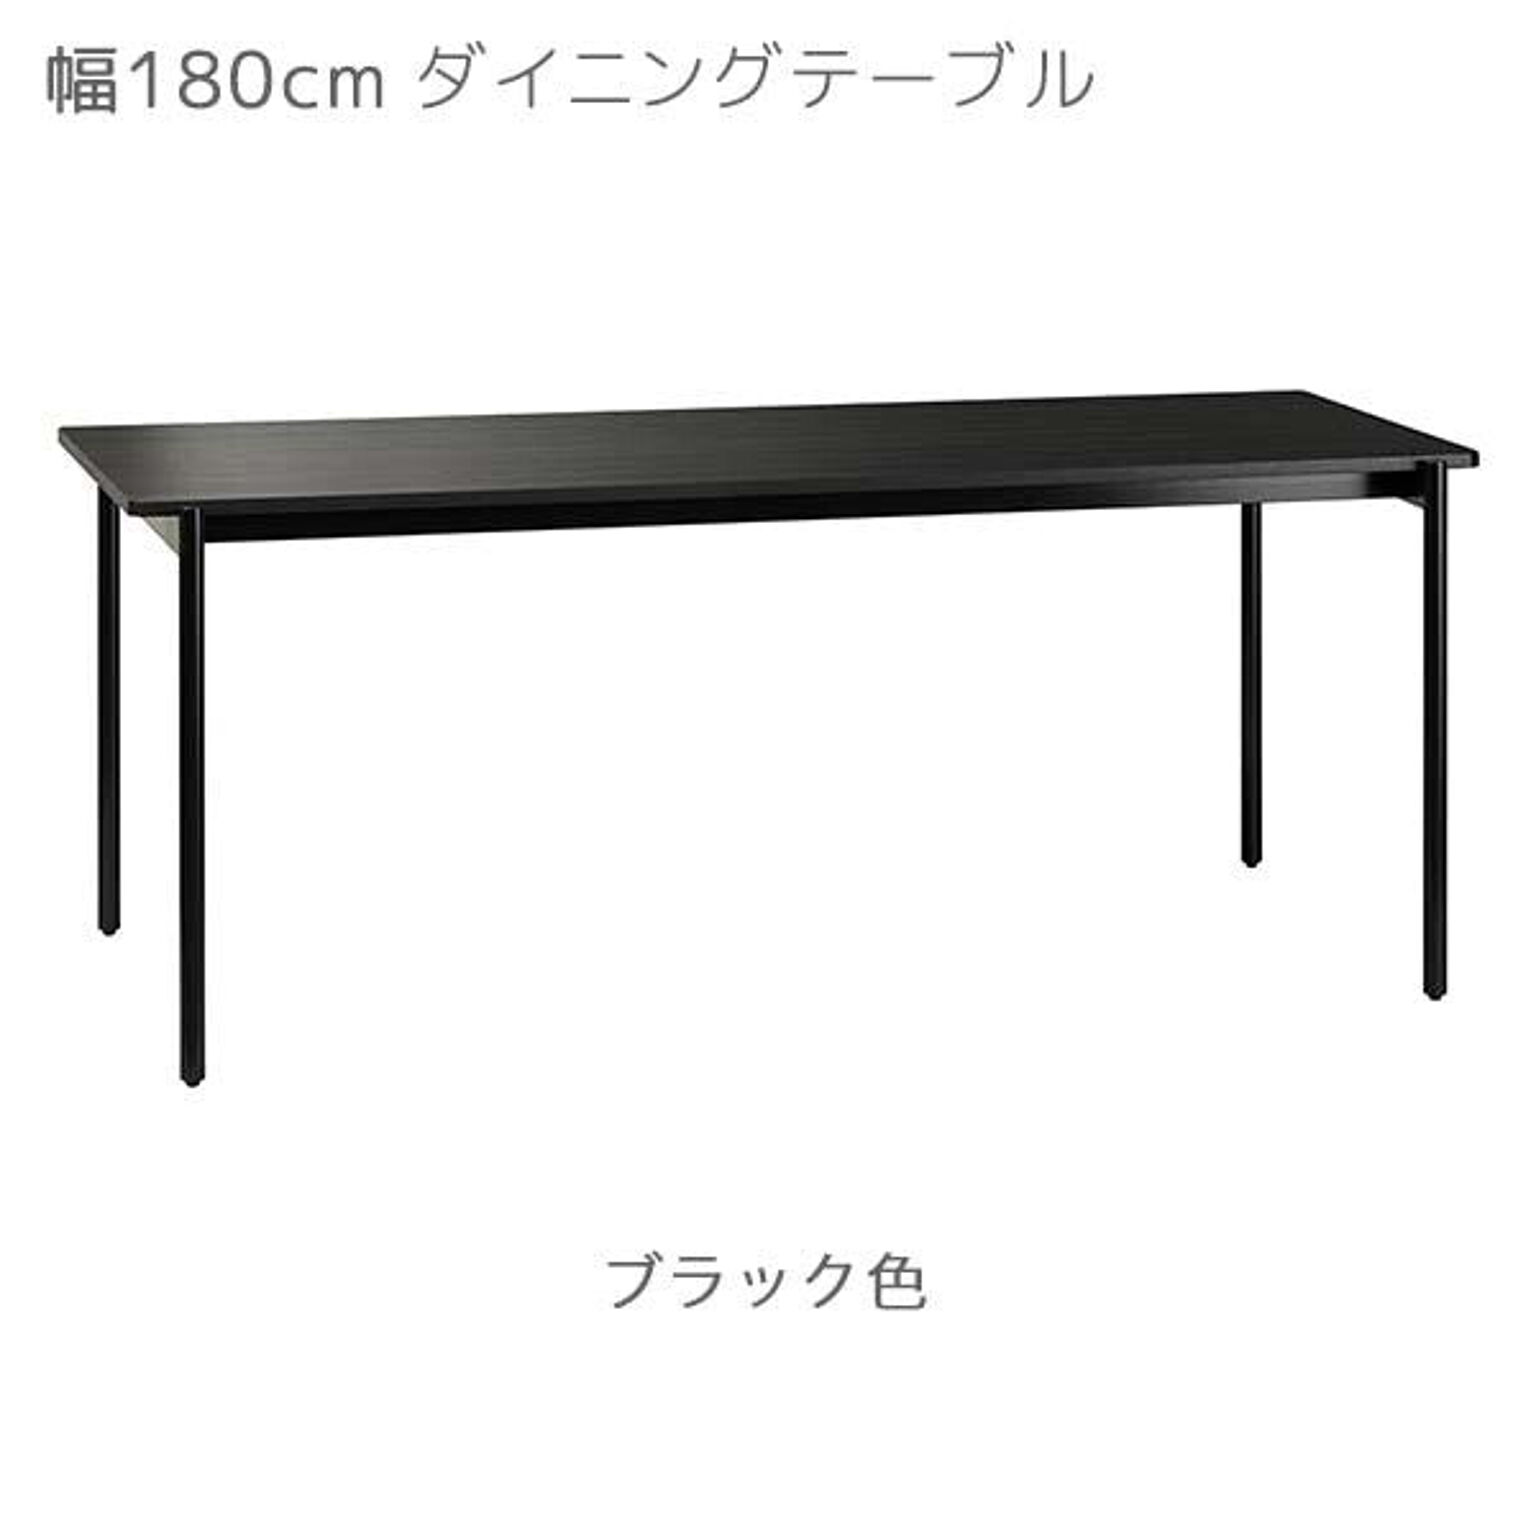 ダイニングテーブル カラー2色 幅150 奥行80 高さ72 ブラック色 ナチュラル色 食卓 テーブル CHARME シャルム CHM-150